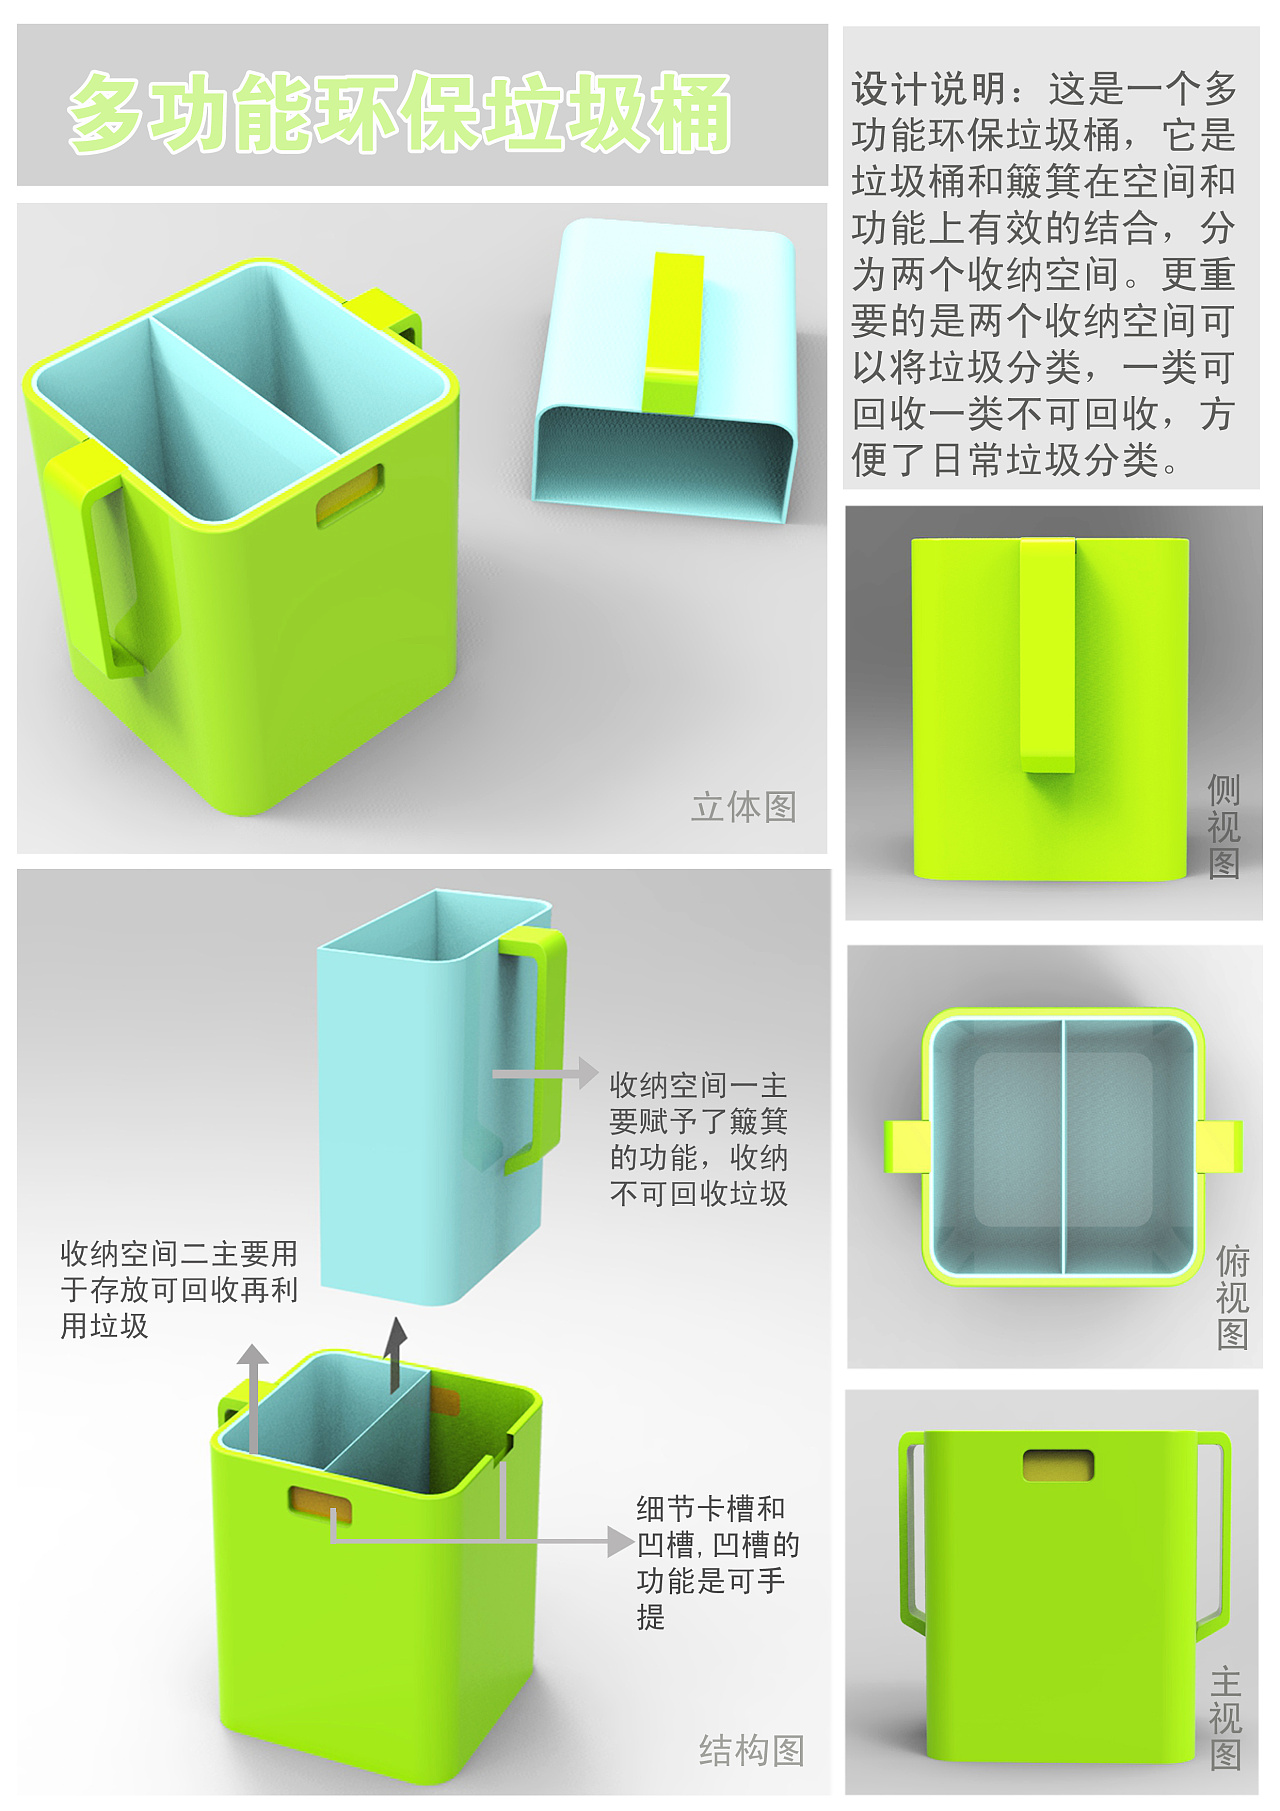 创意垃圾桶设计说明图片